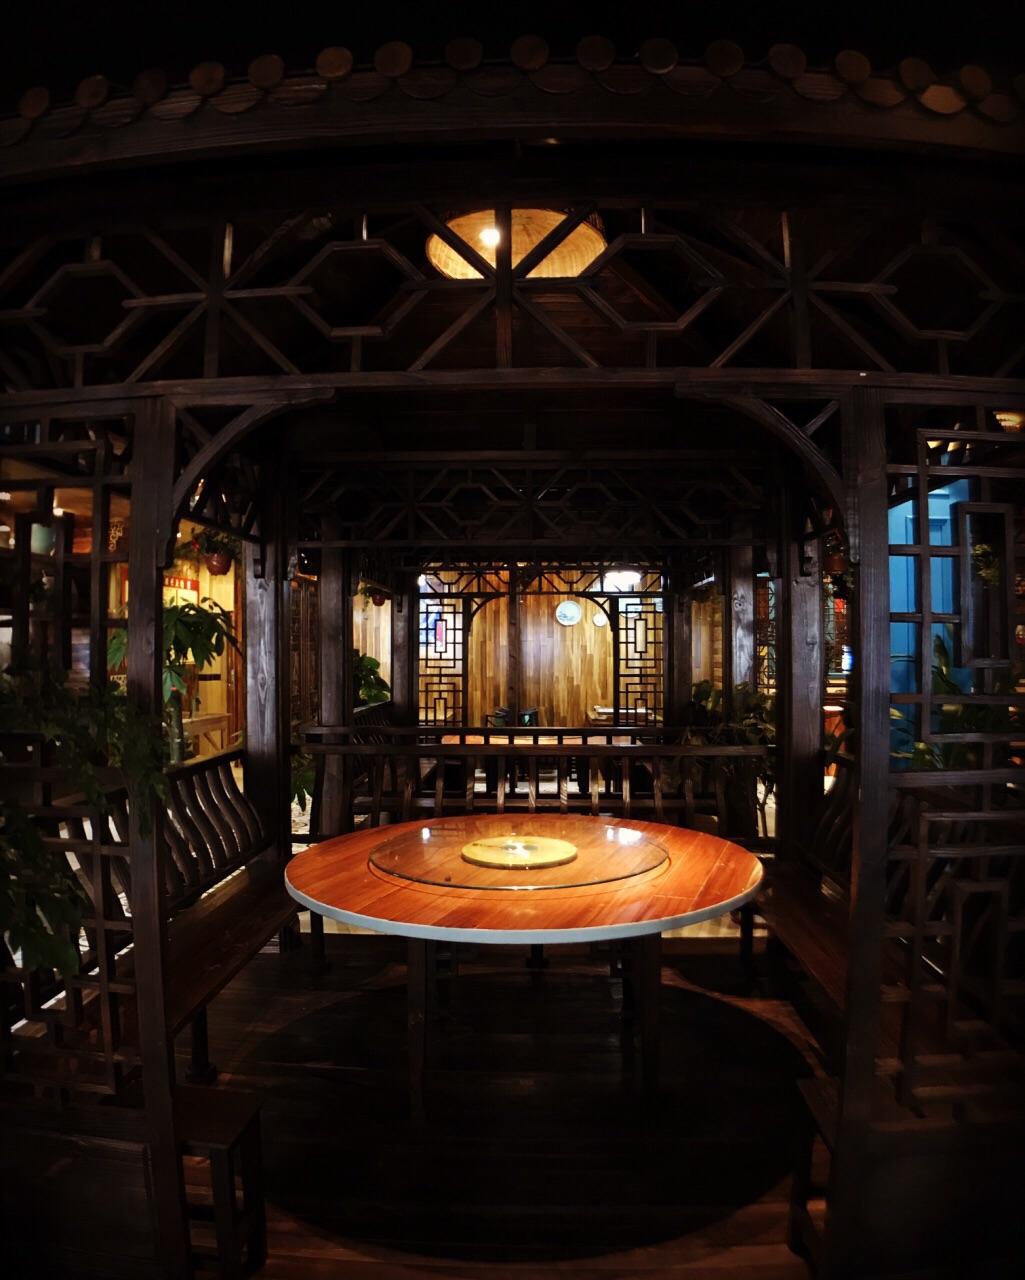 上海高老庄饭店图片